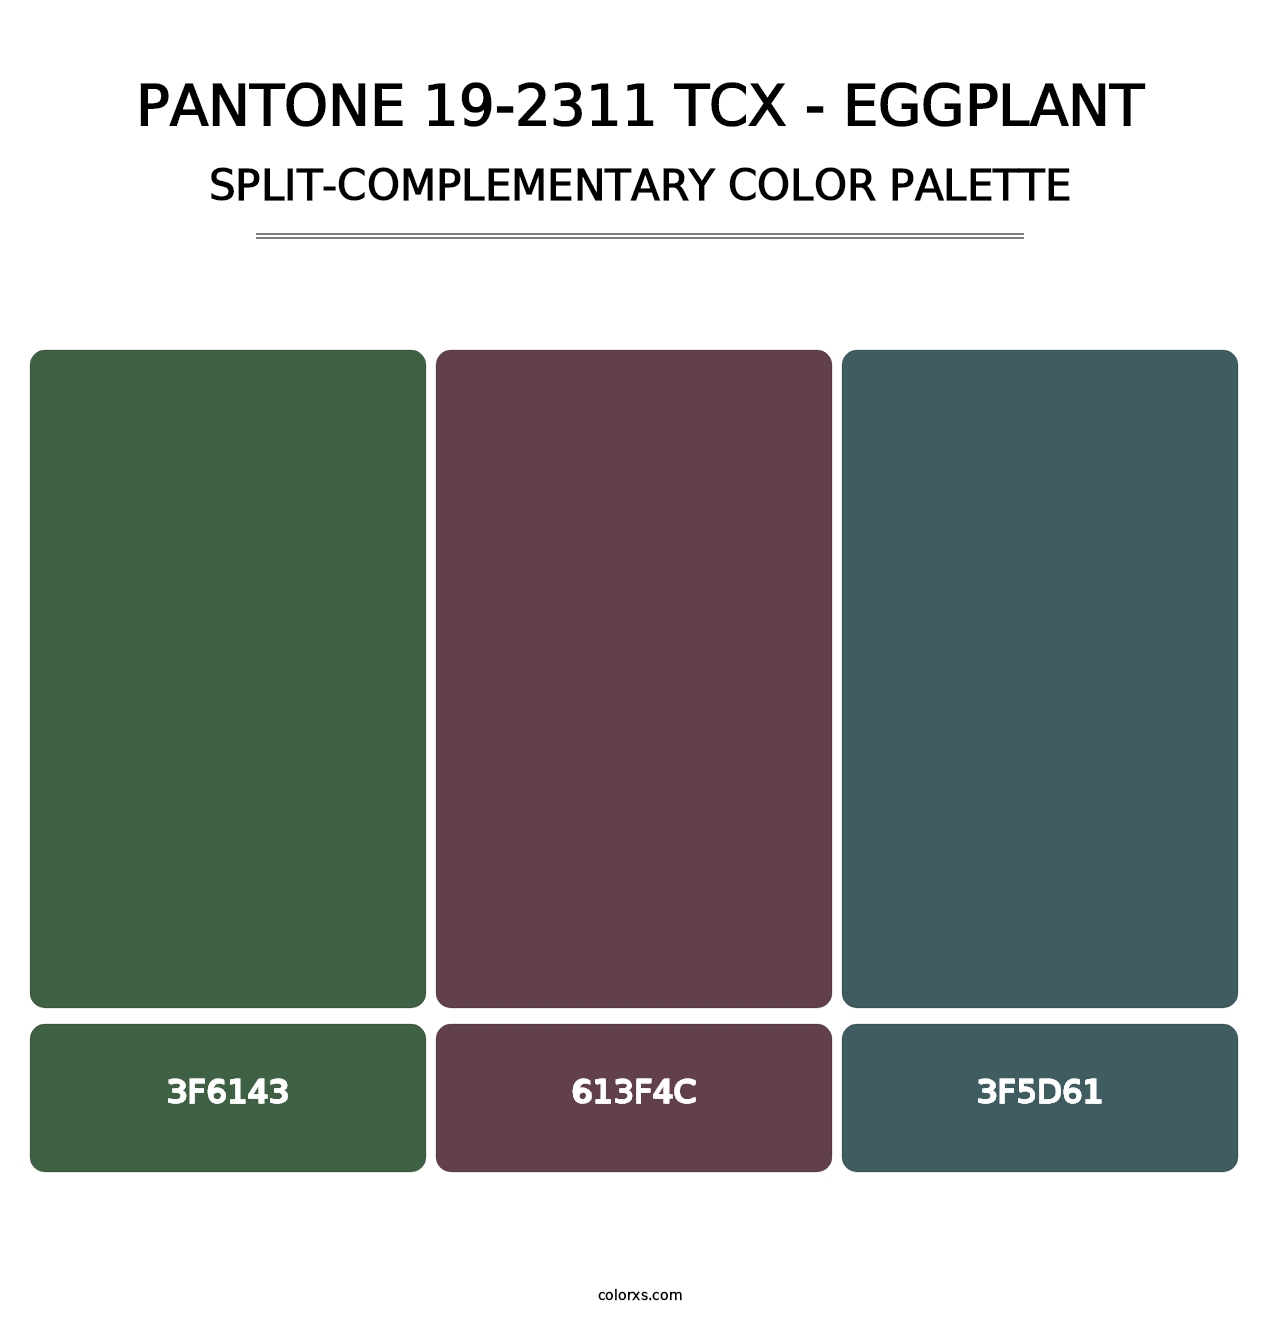 PANTONE 19-2311 TCX - Eggplant - Split-Complementary Color Palette